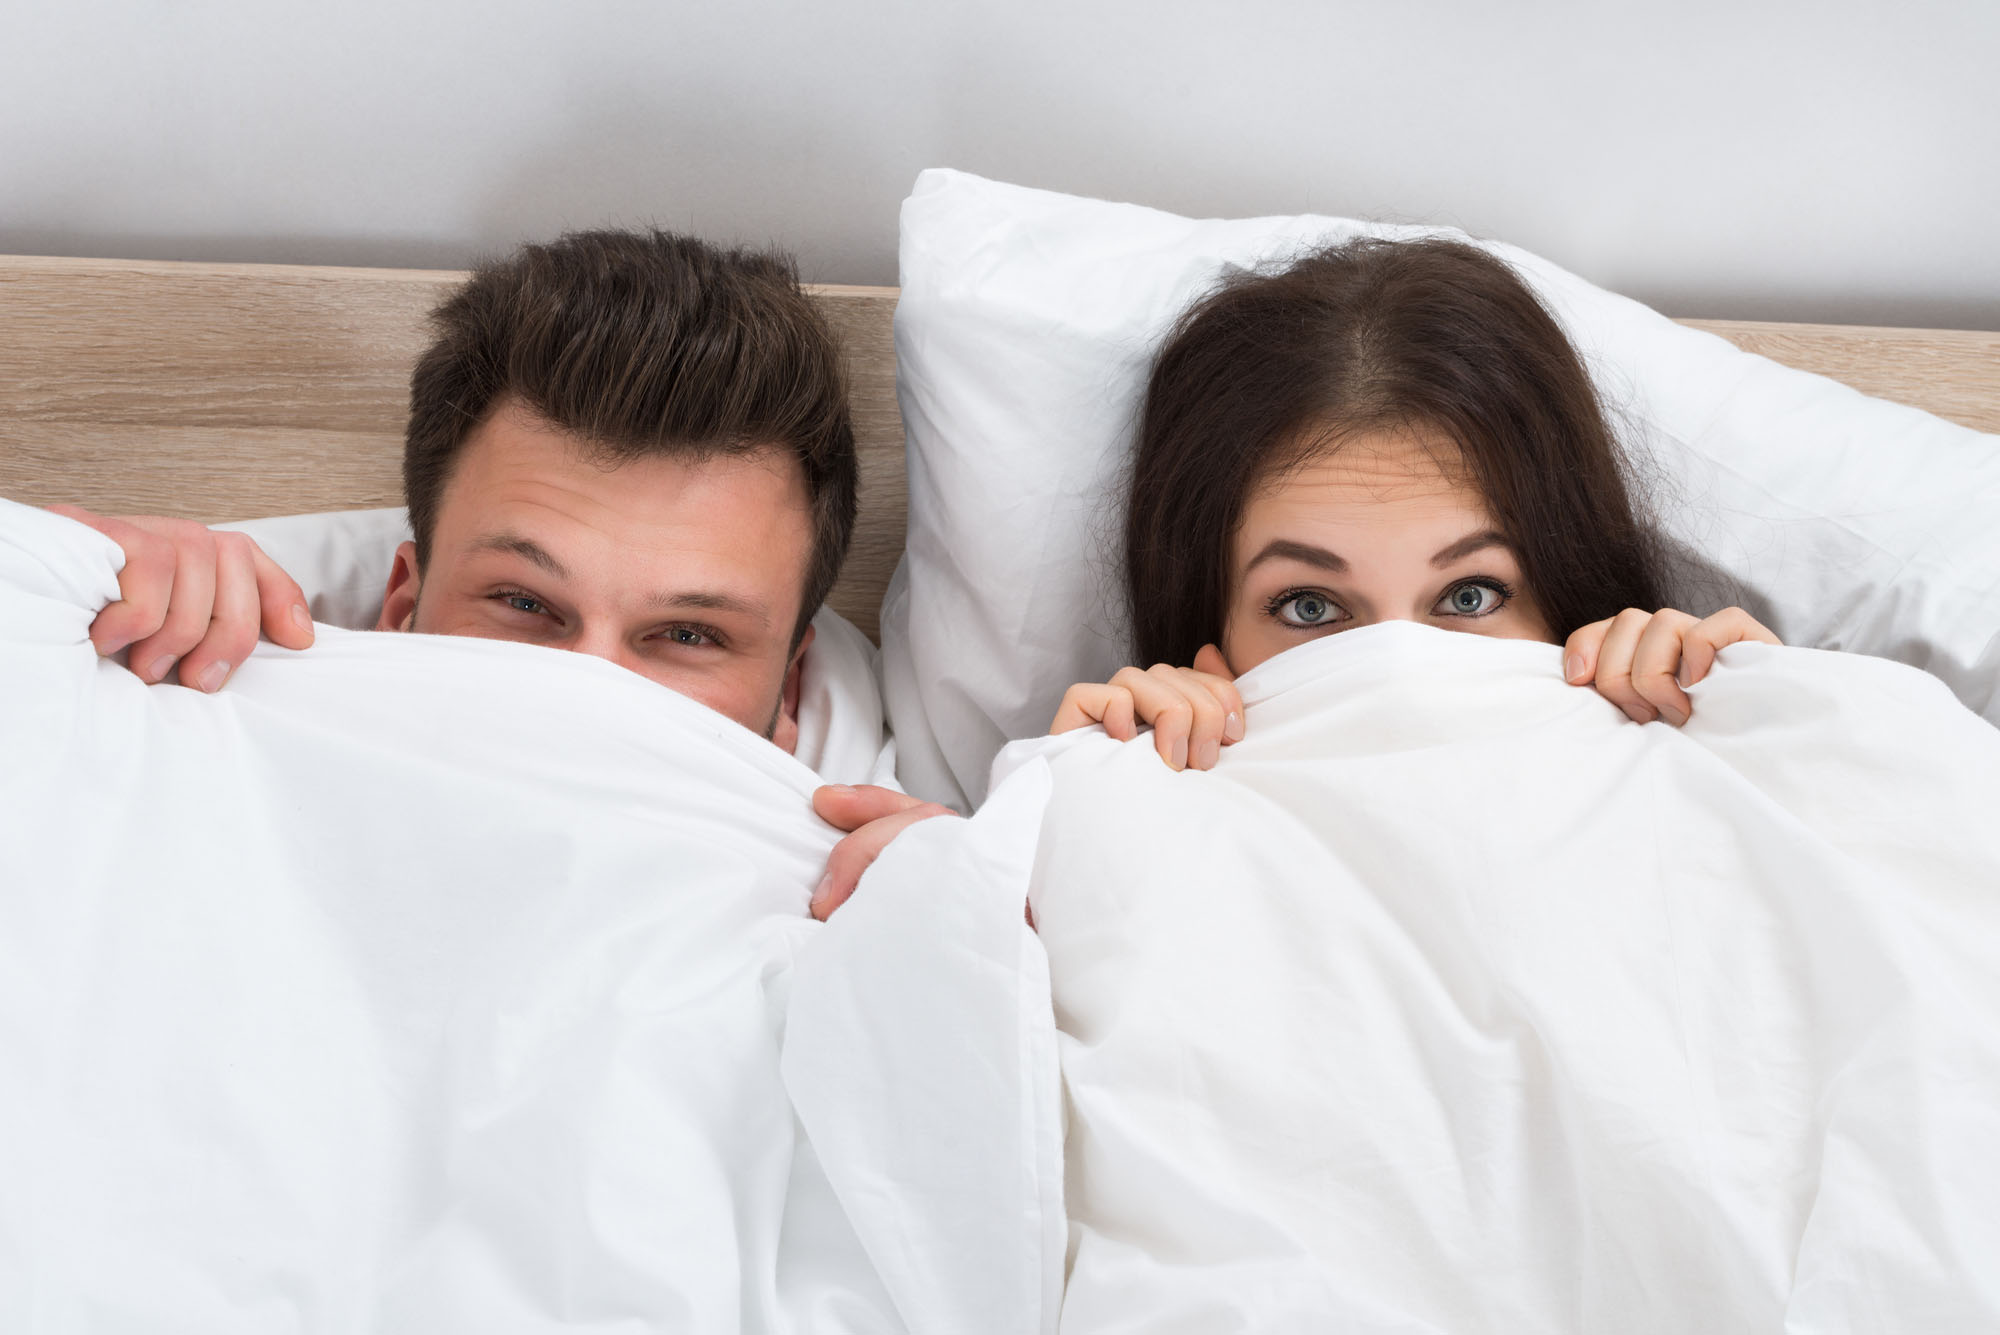 Përse flemë në çarçafë të ndotur? Meshkujt nuk i ndërrojnë madje as 18 ditë pas seksit